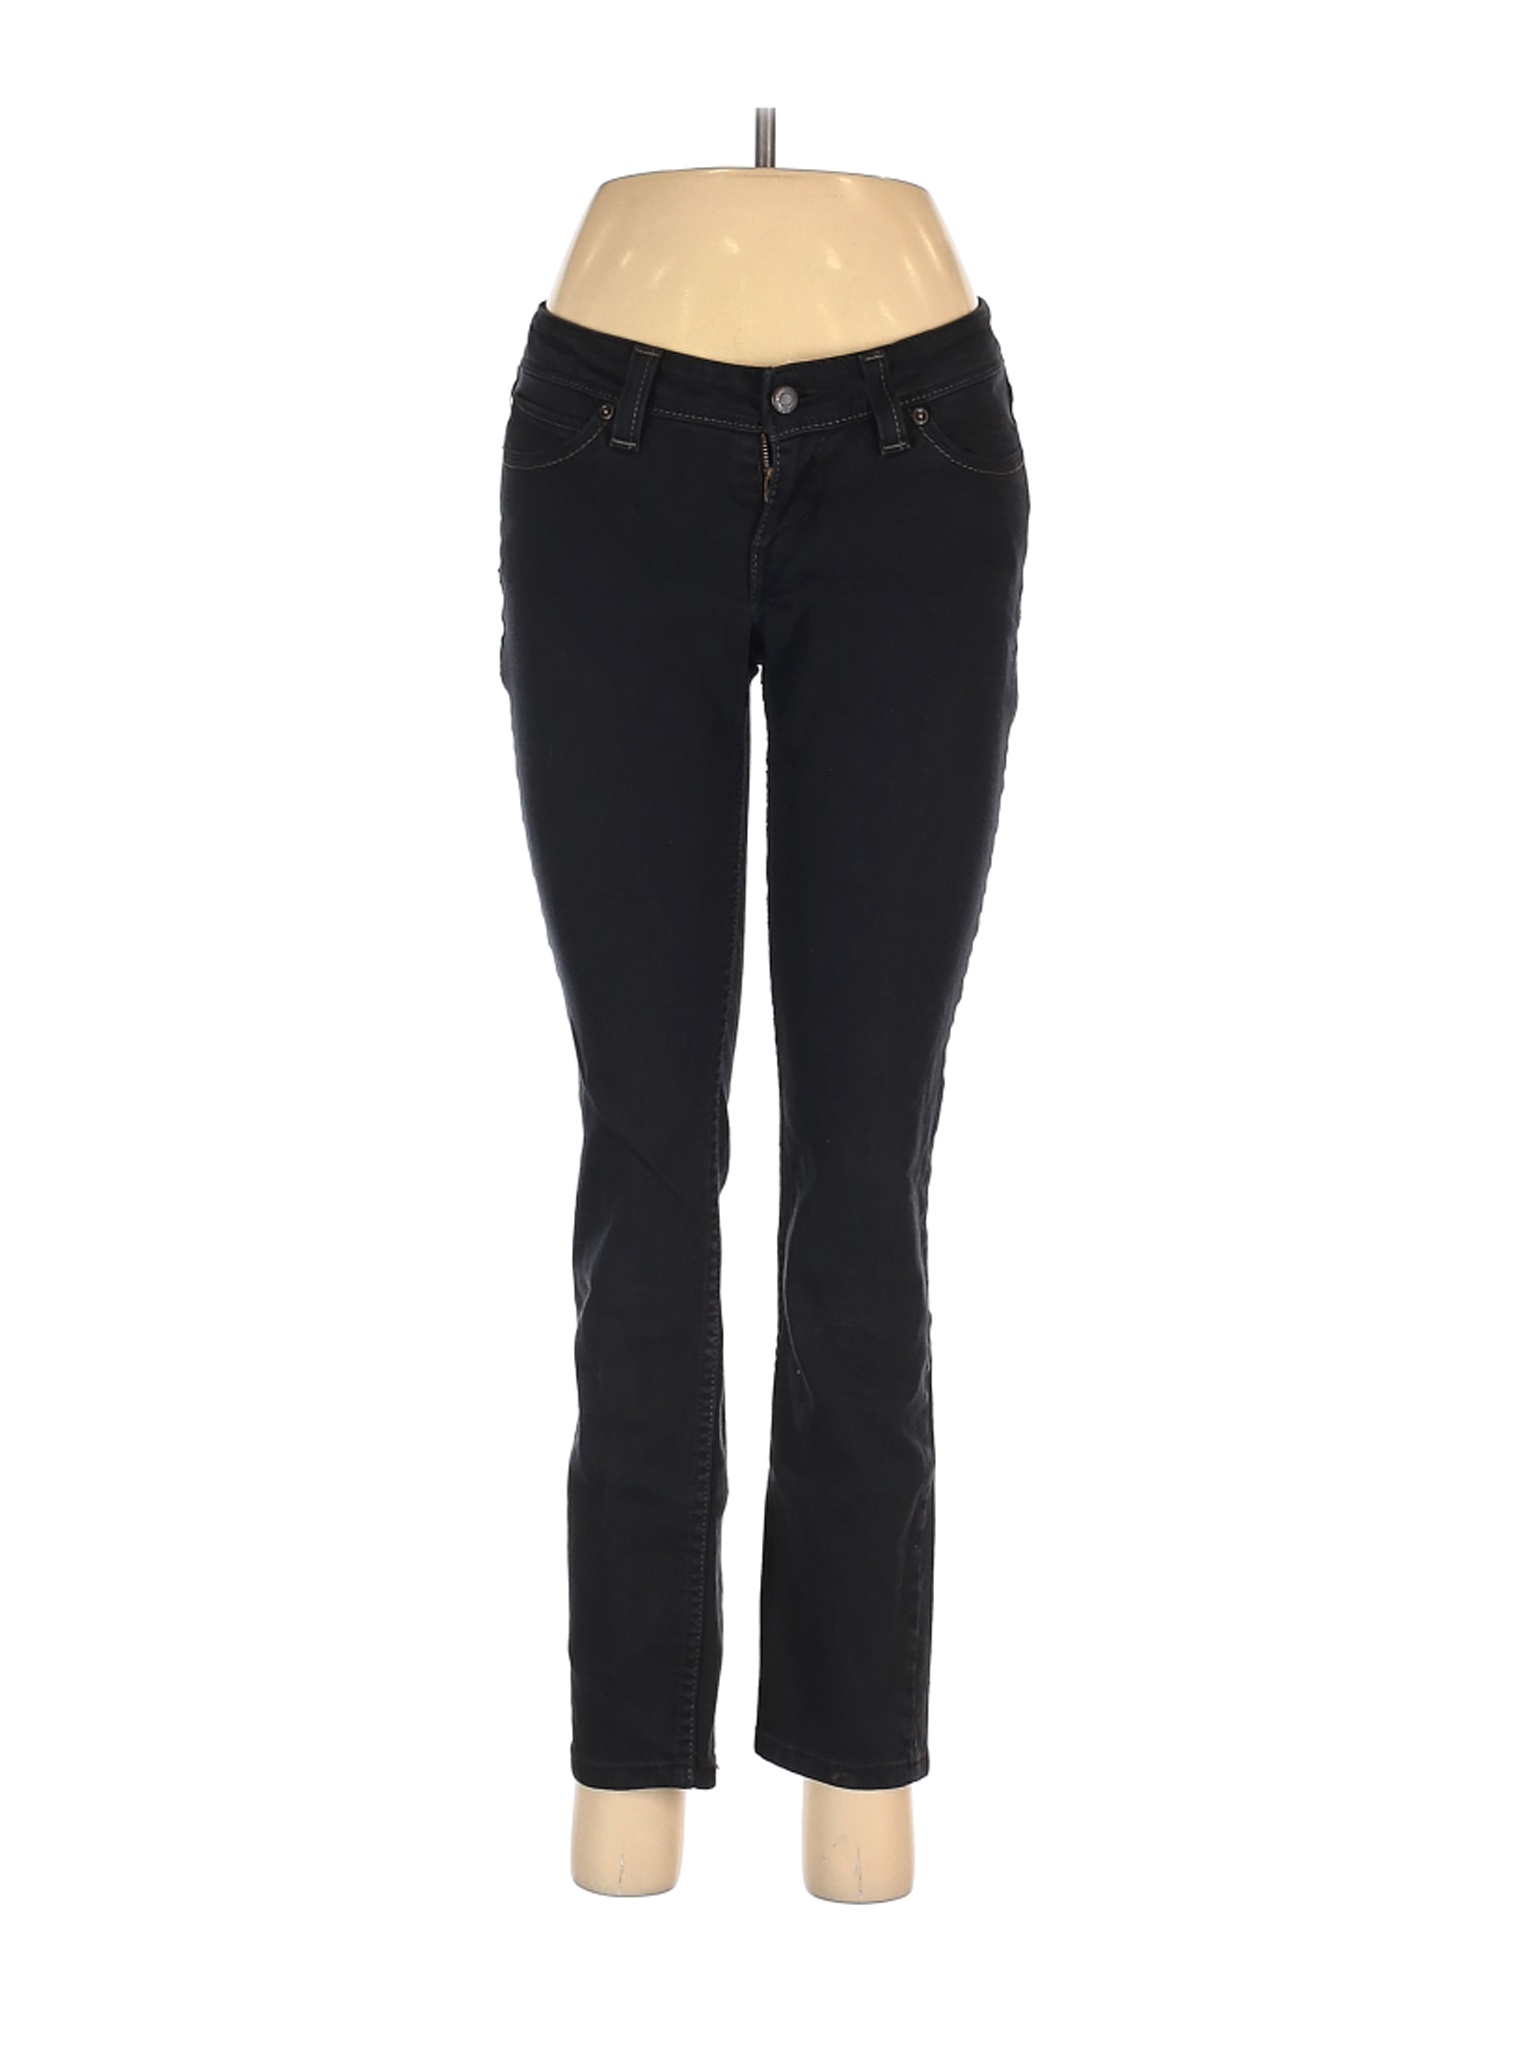 Levi's Women Black Jeans 7 | eBay